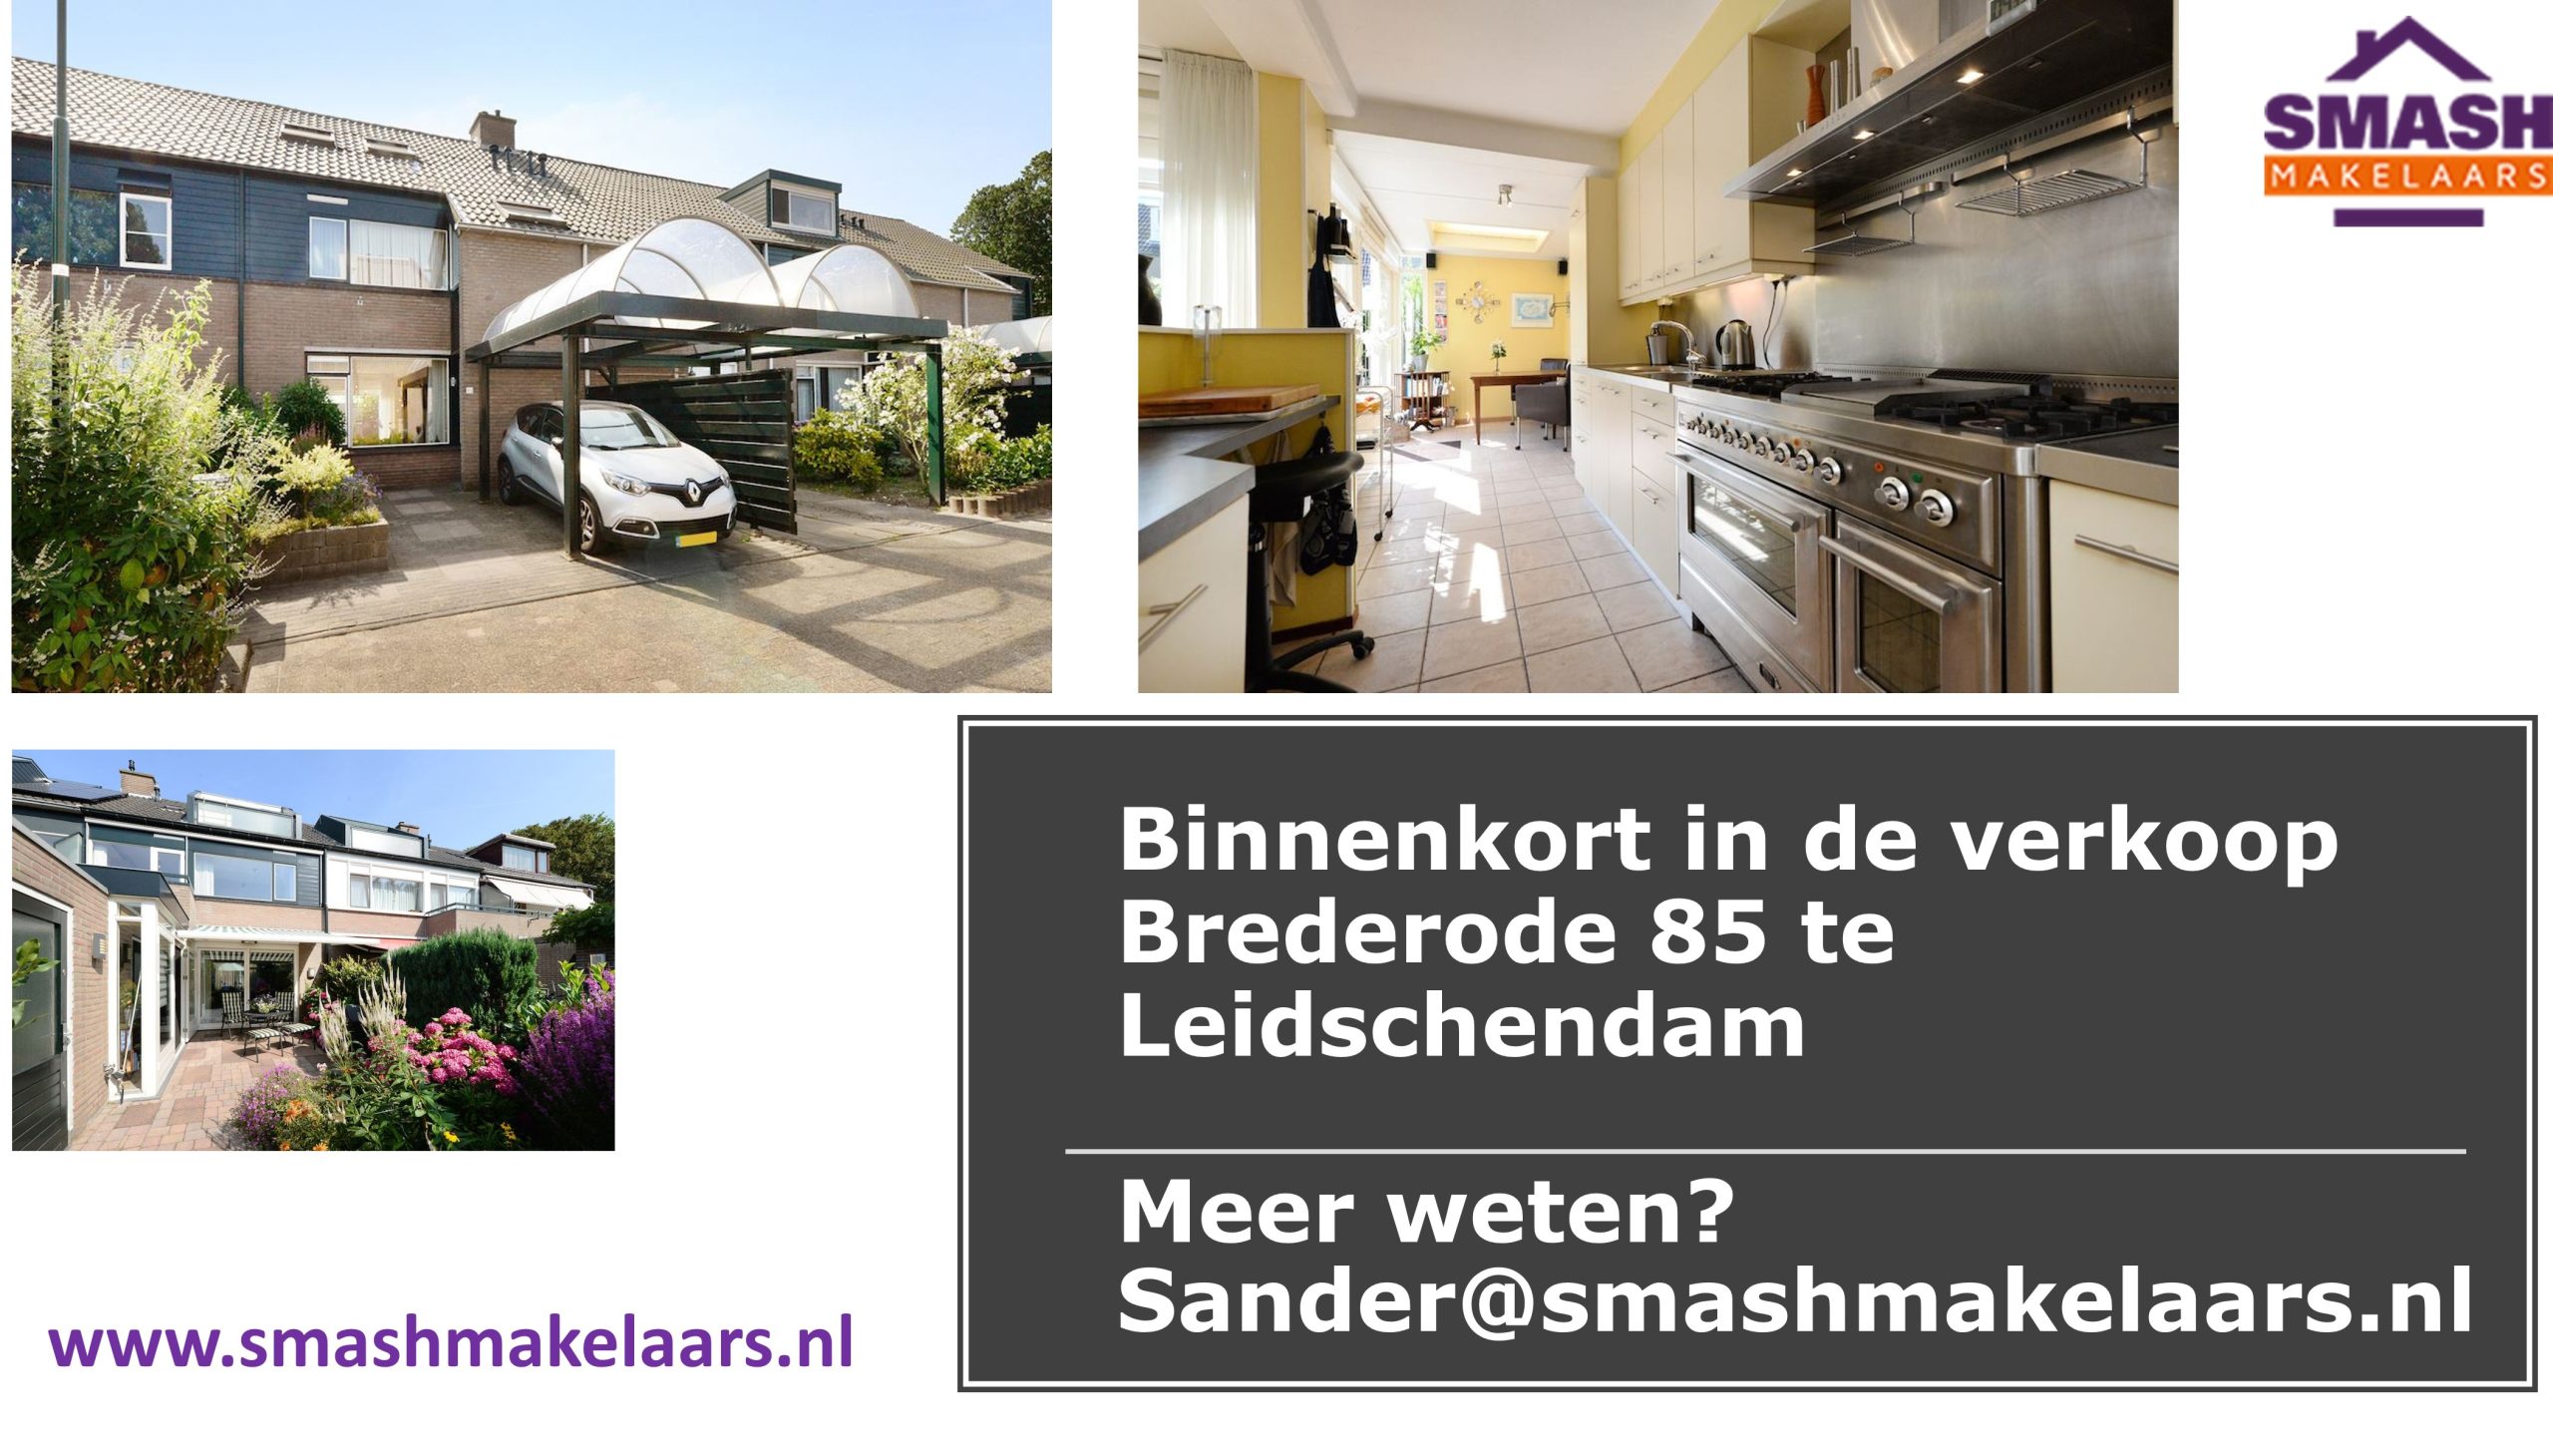 Te koop in Leidschendam in de wijk Duivenvoorde tussenwoning aan de Brederode 85 met voor en achtertuin en carport. Meer weten ga naar SMASH makelaars